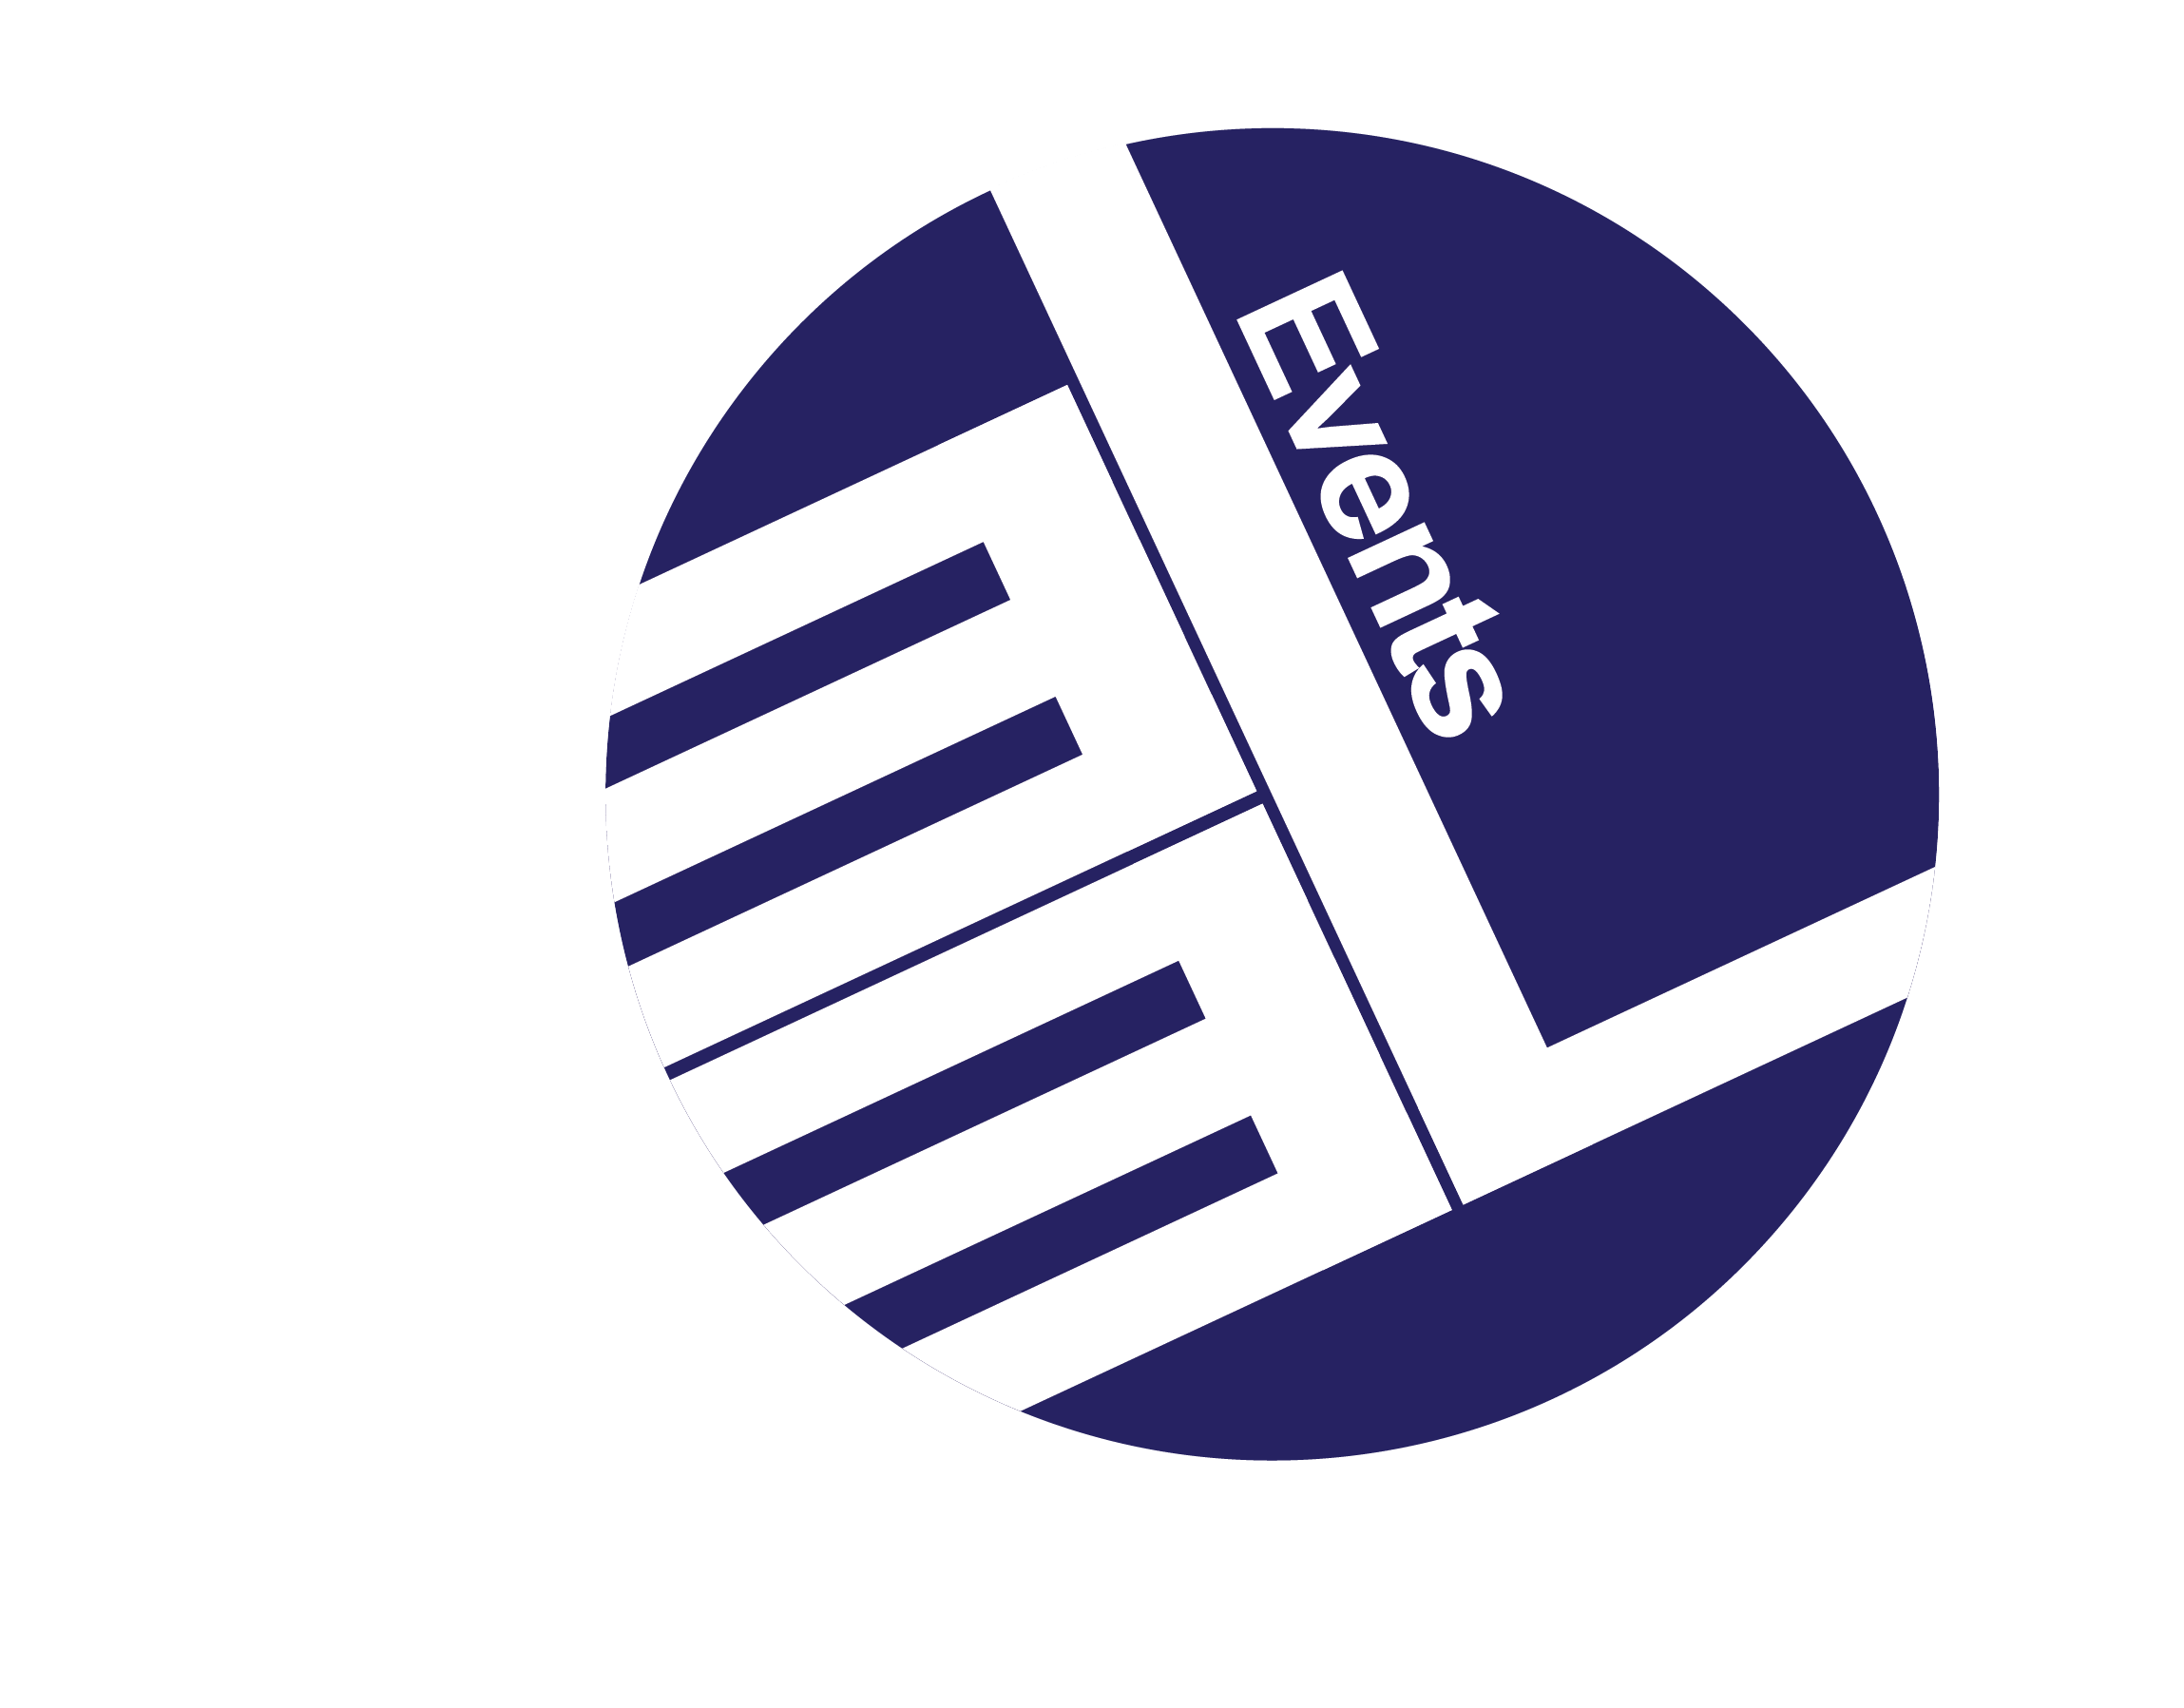 Eel Logo - PPP IN TURKEY FORUM 2018